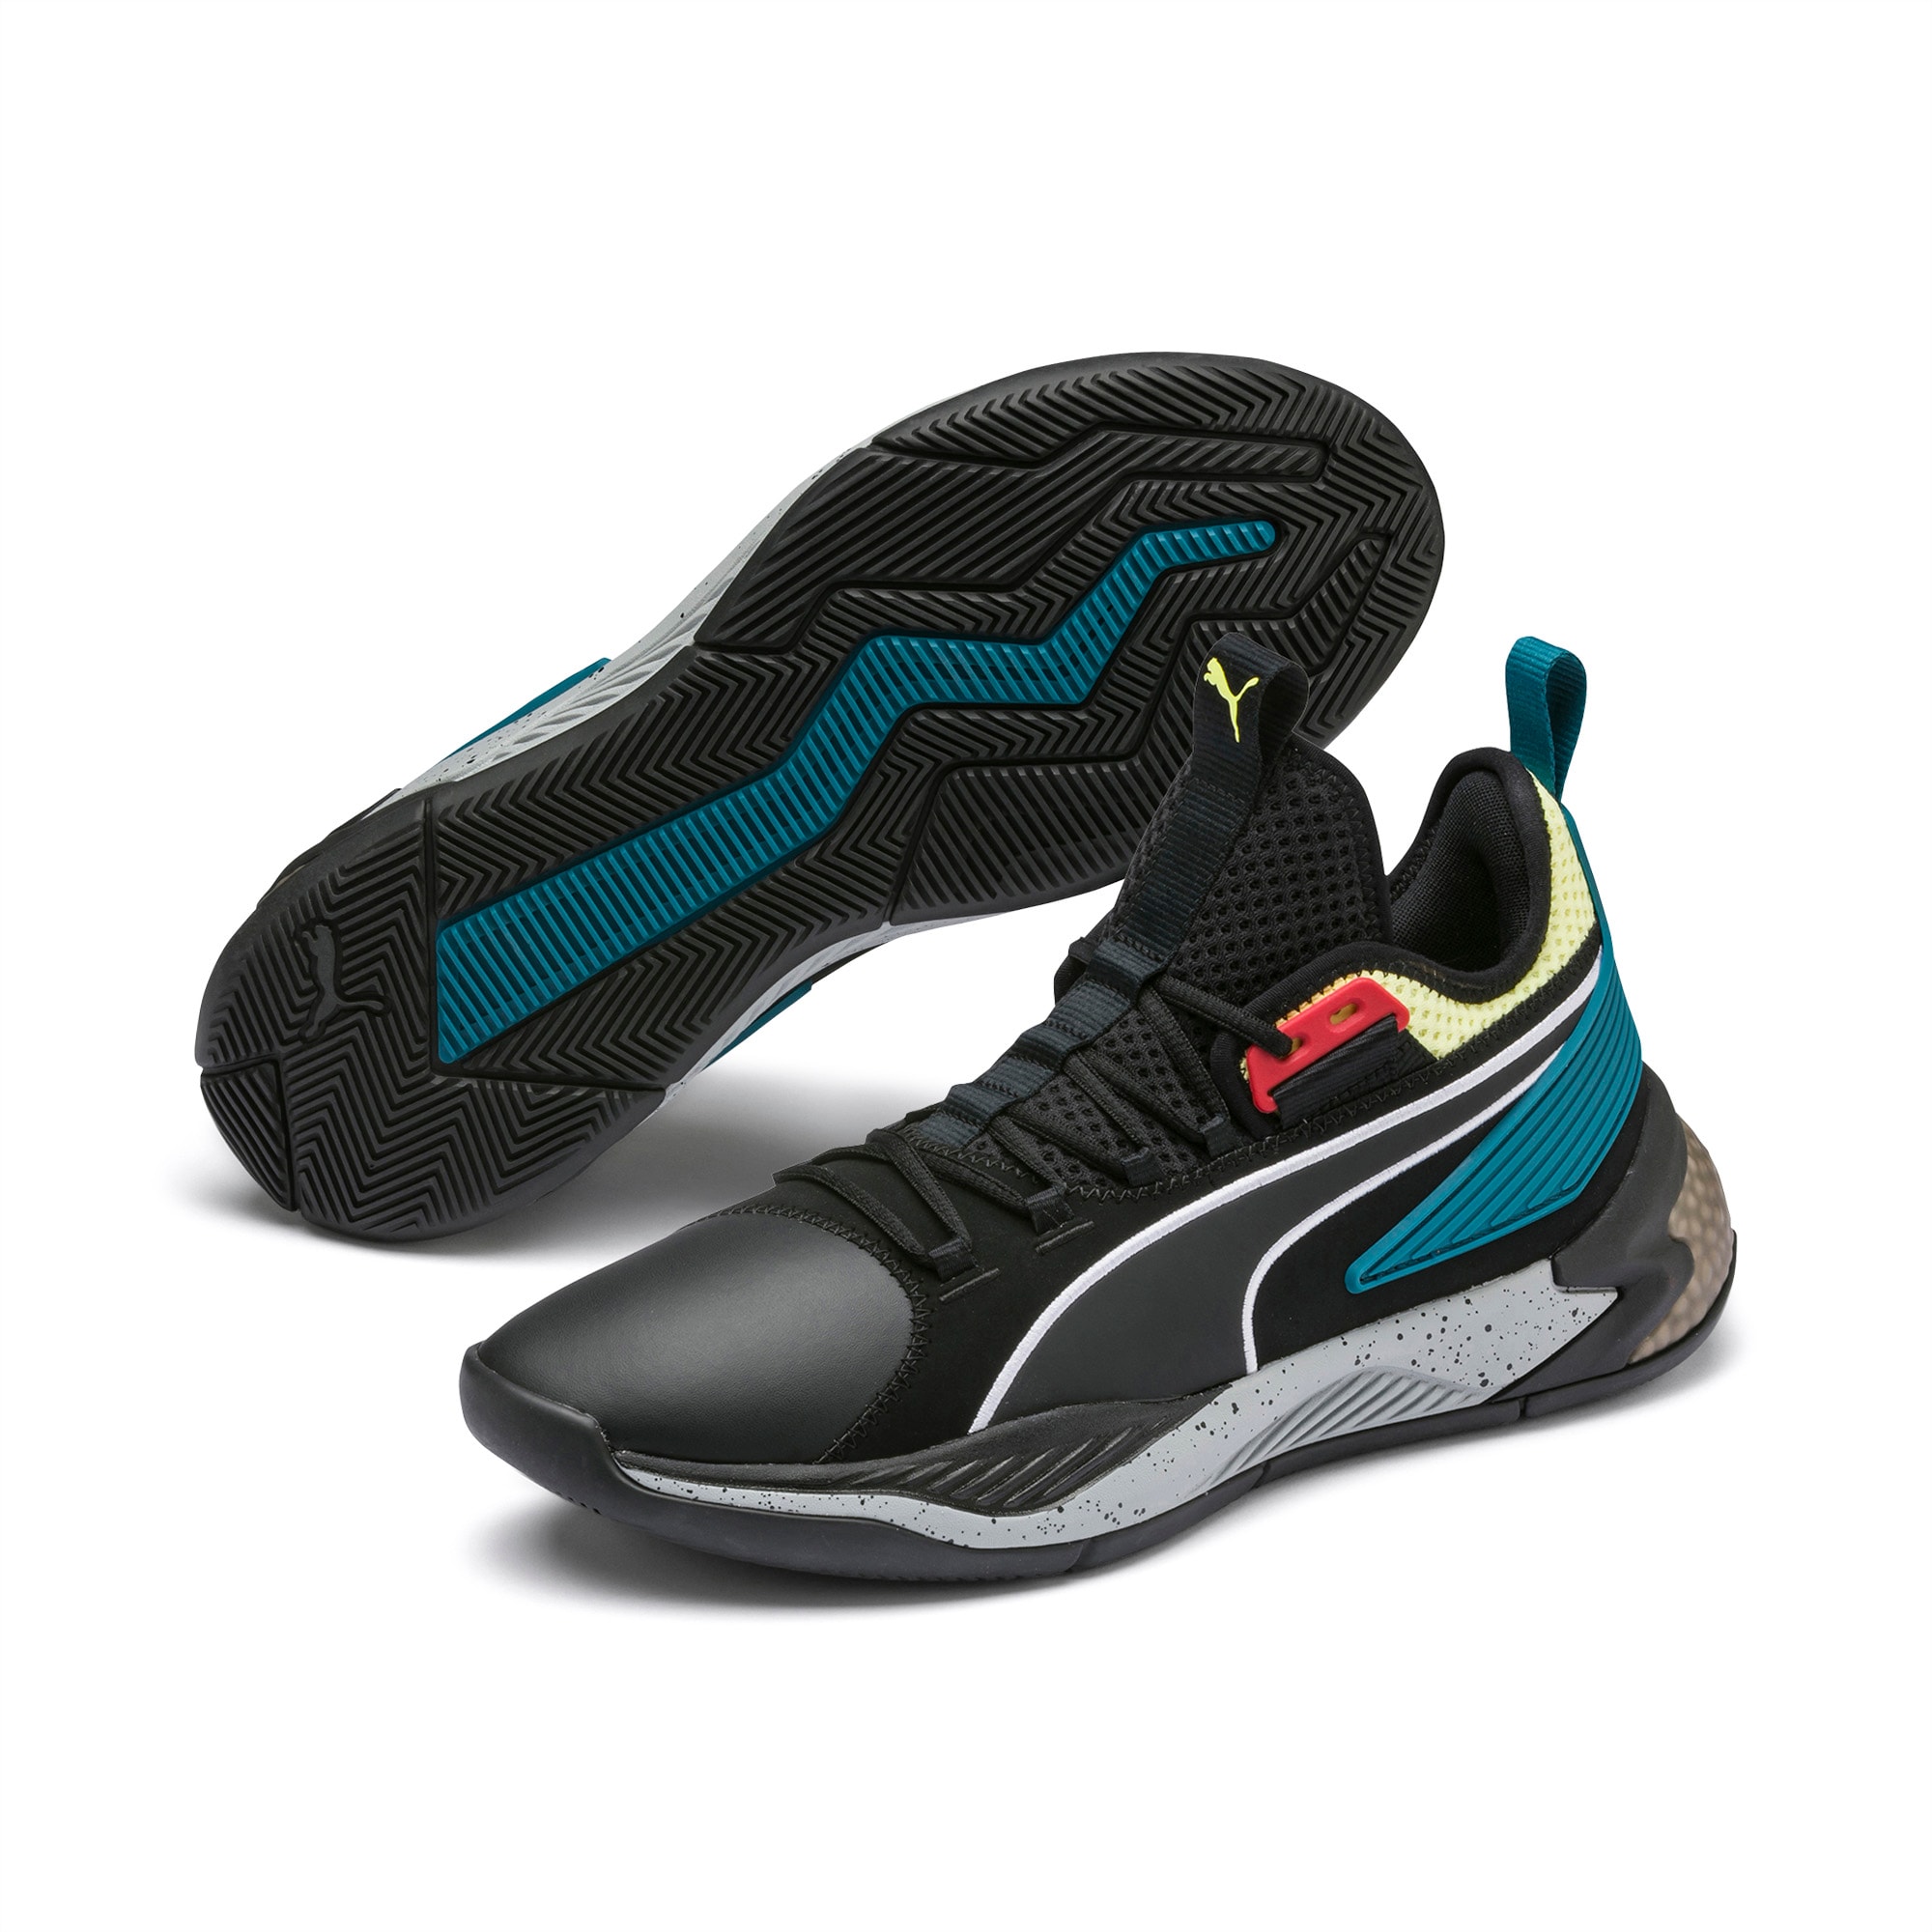 Uproar Spectra Basketball Shoes | PUMA US